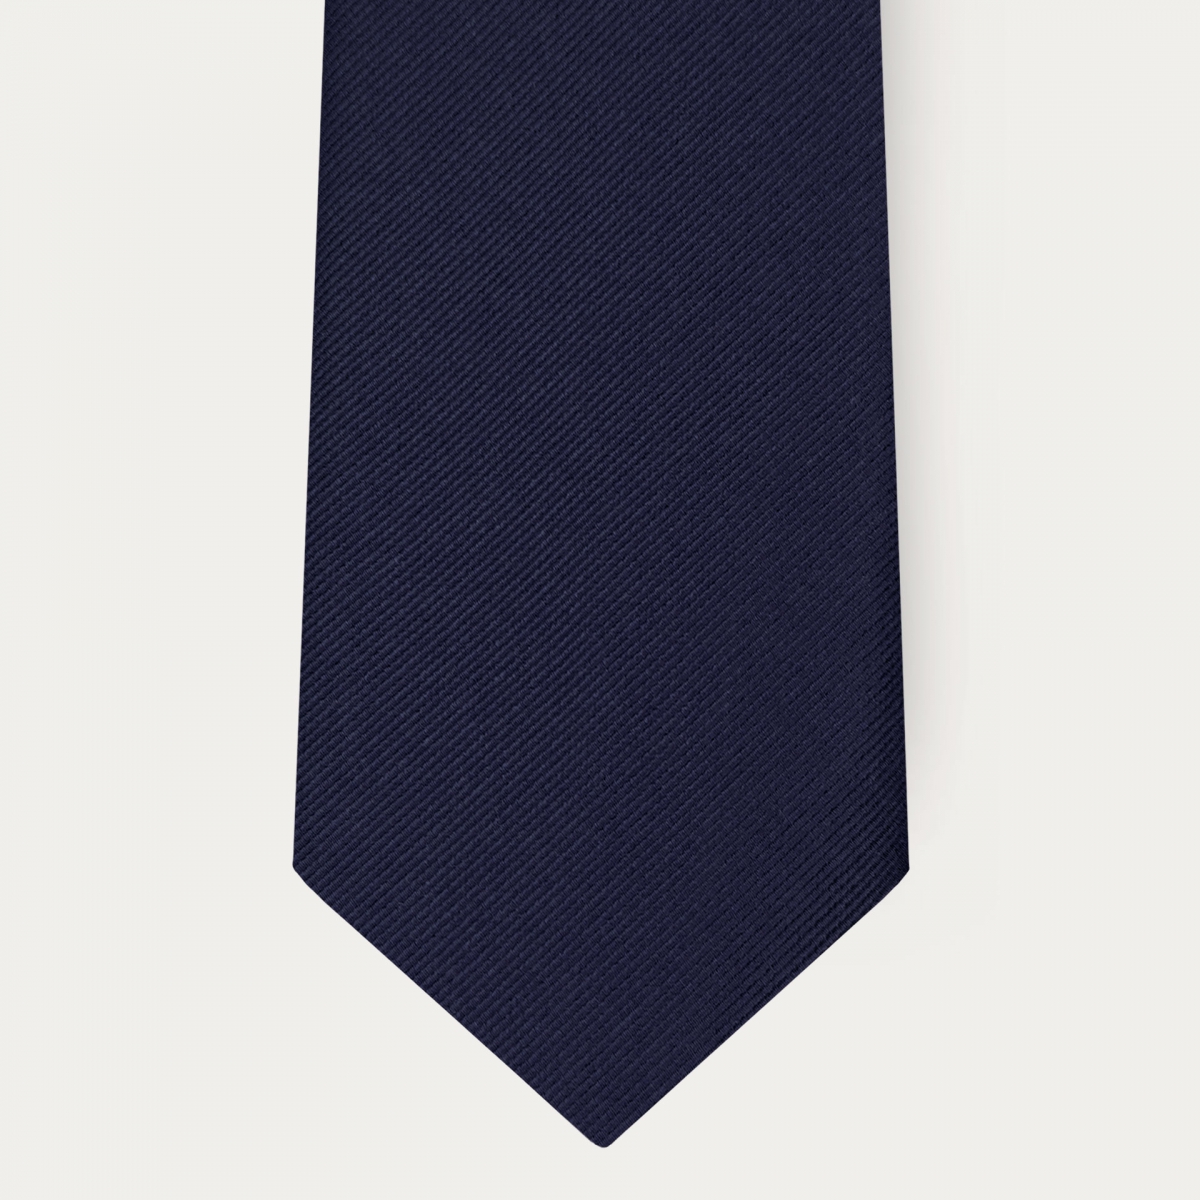 Corbata clásica de seda azul marino